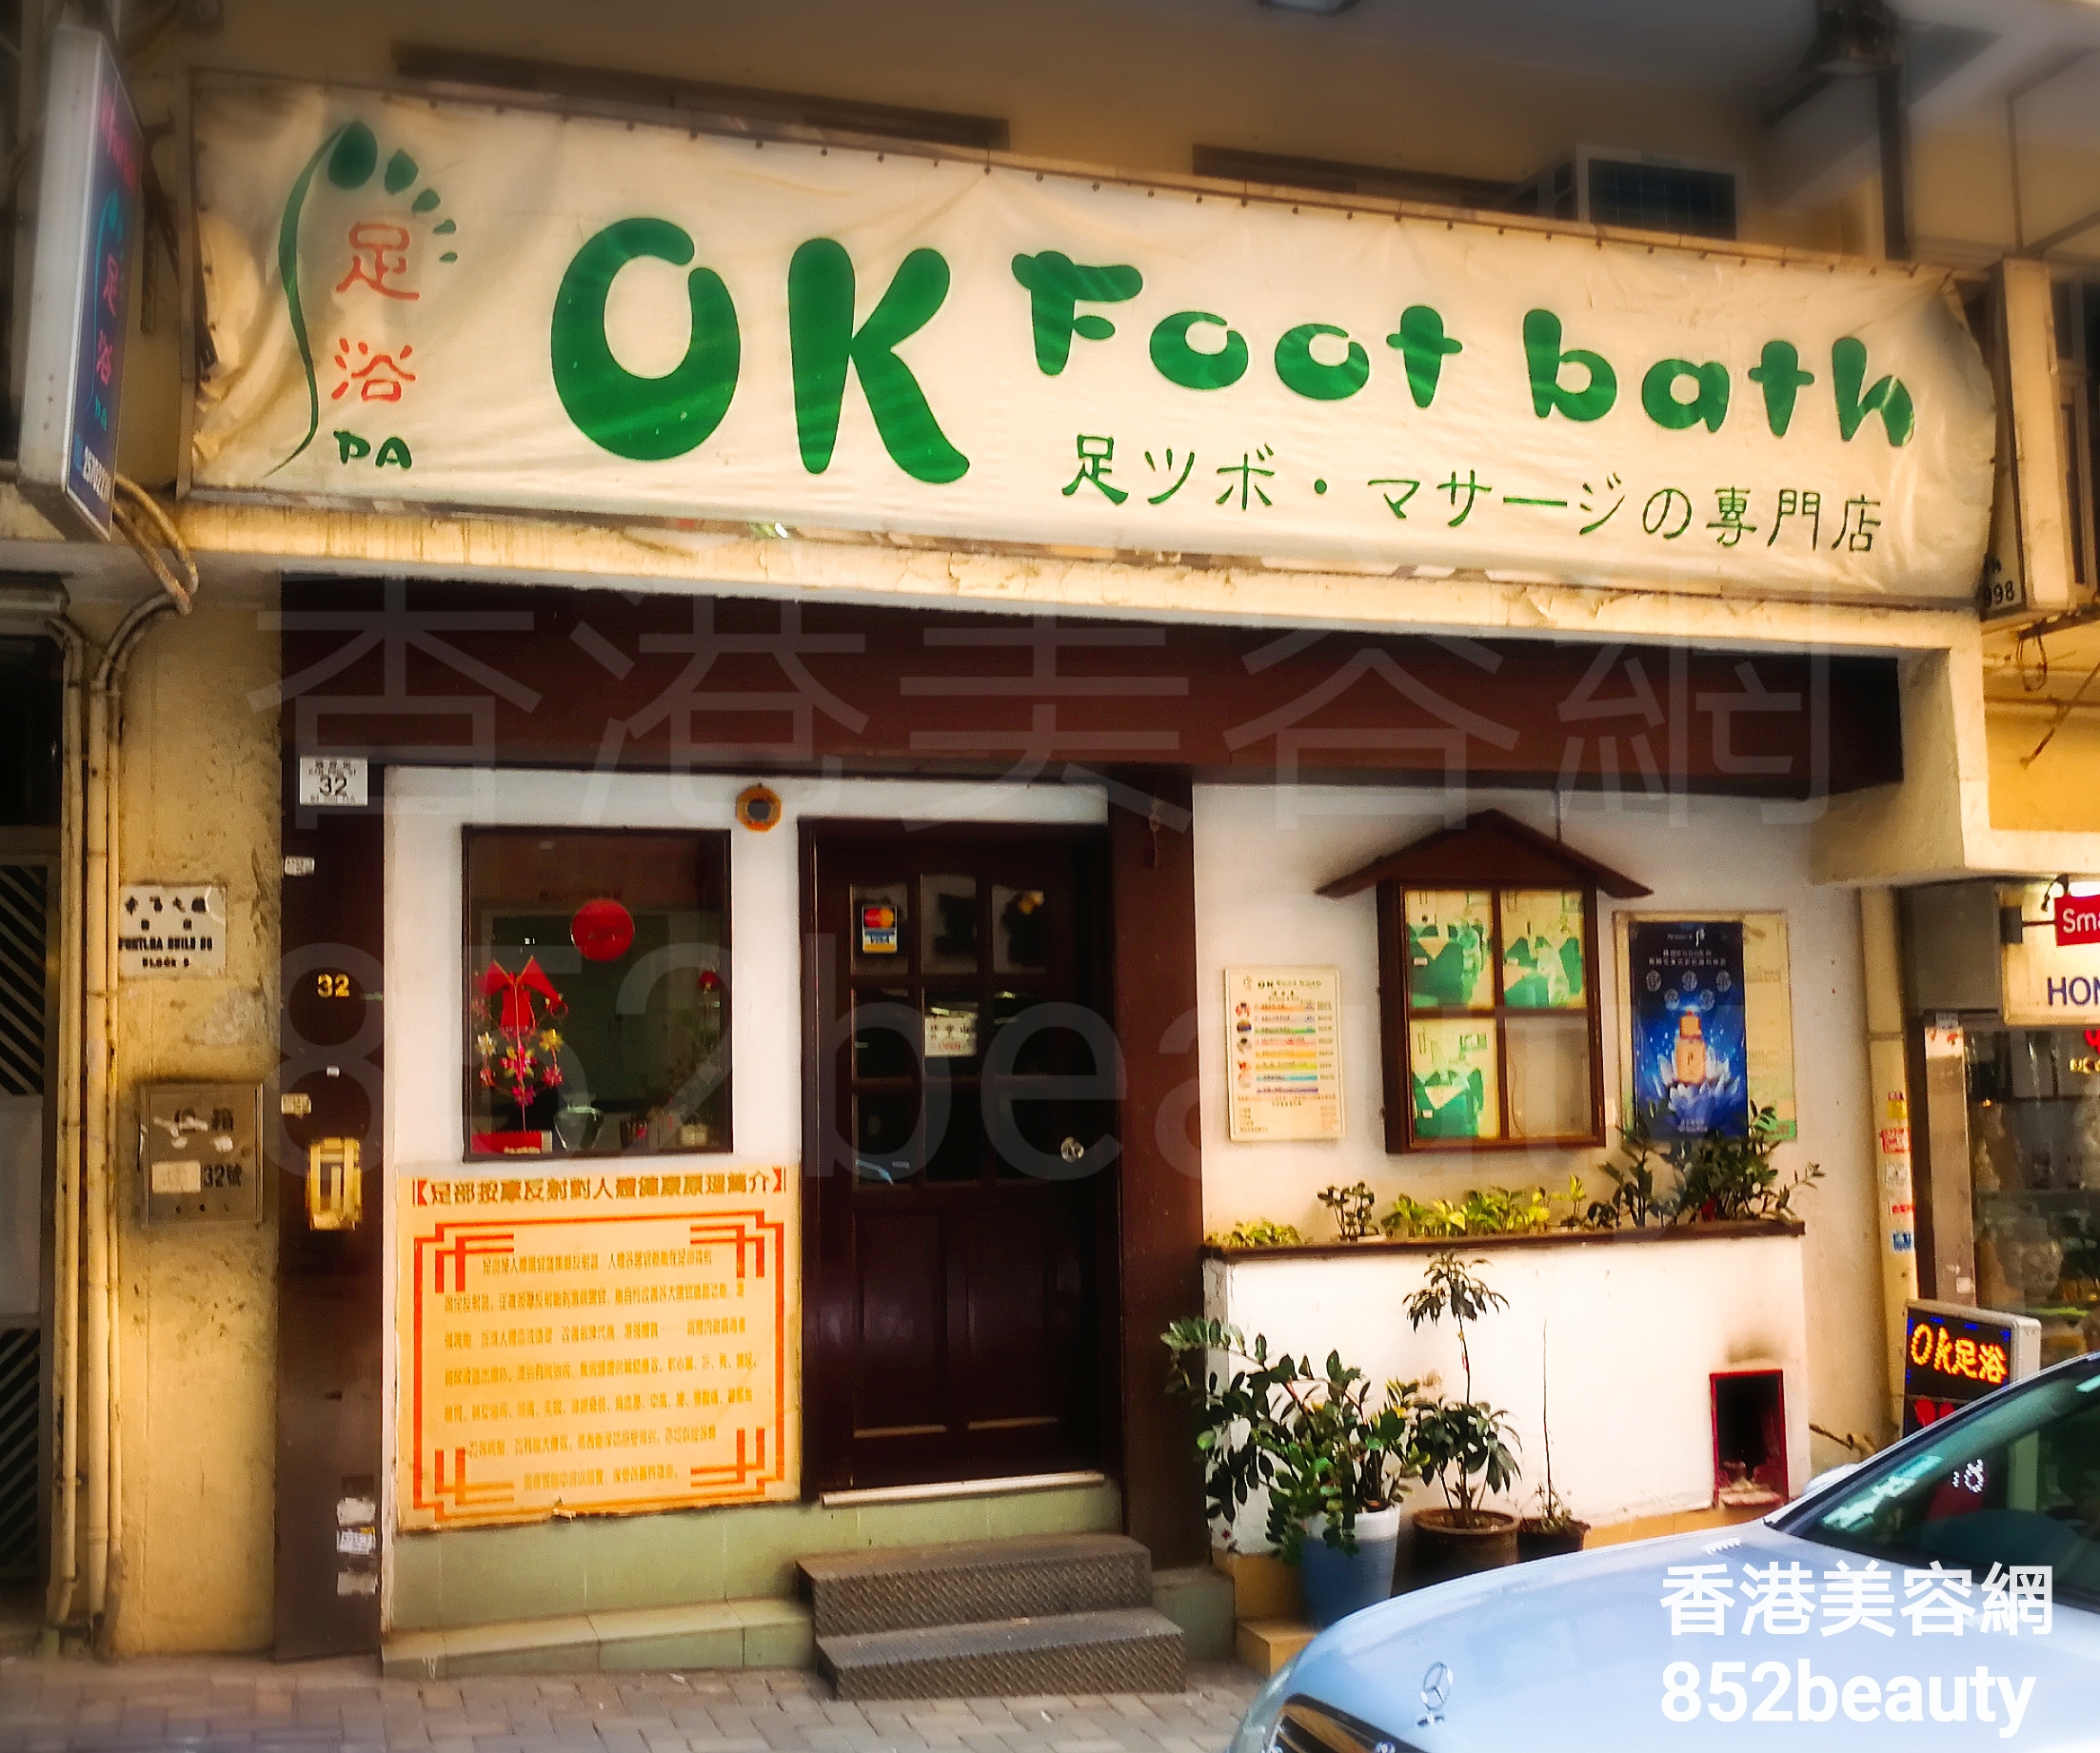 面部護理: OK Foot bath